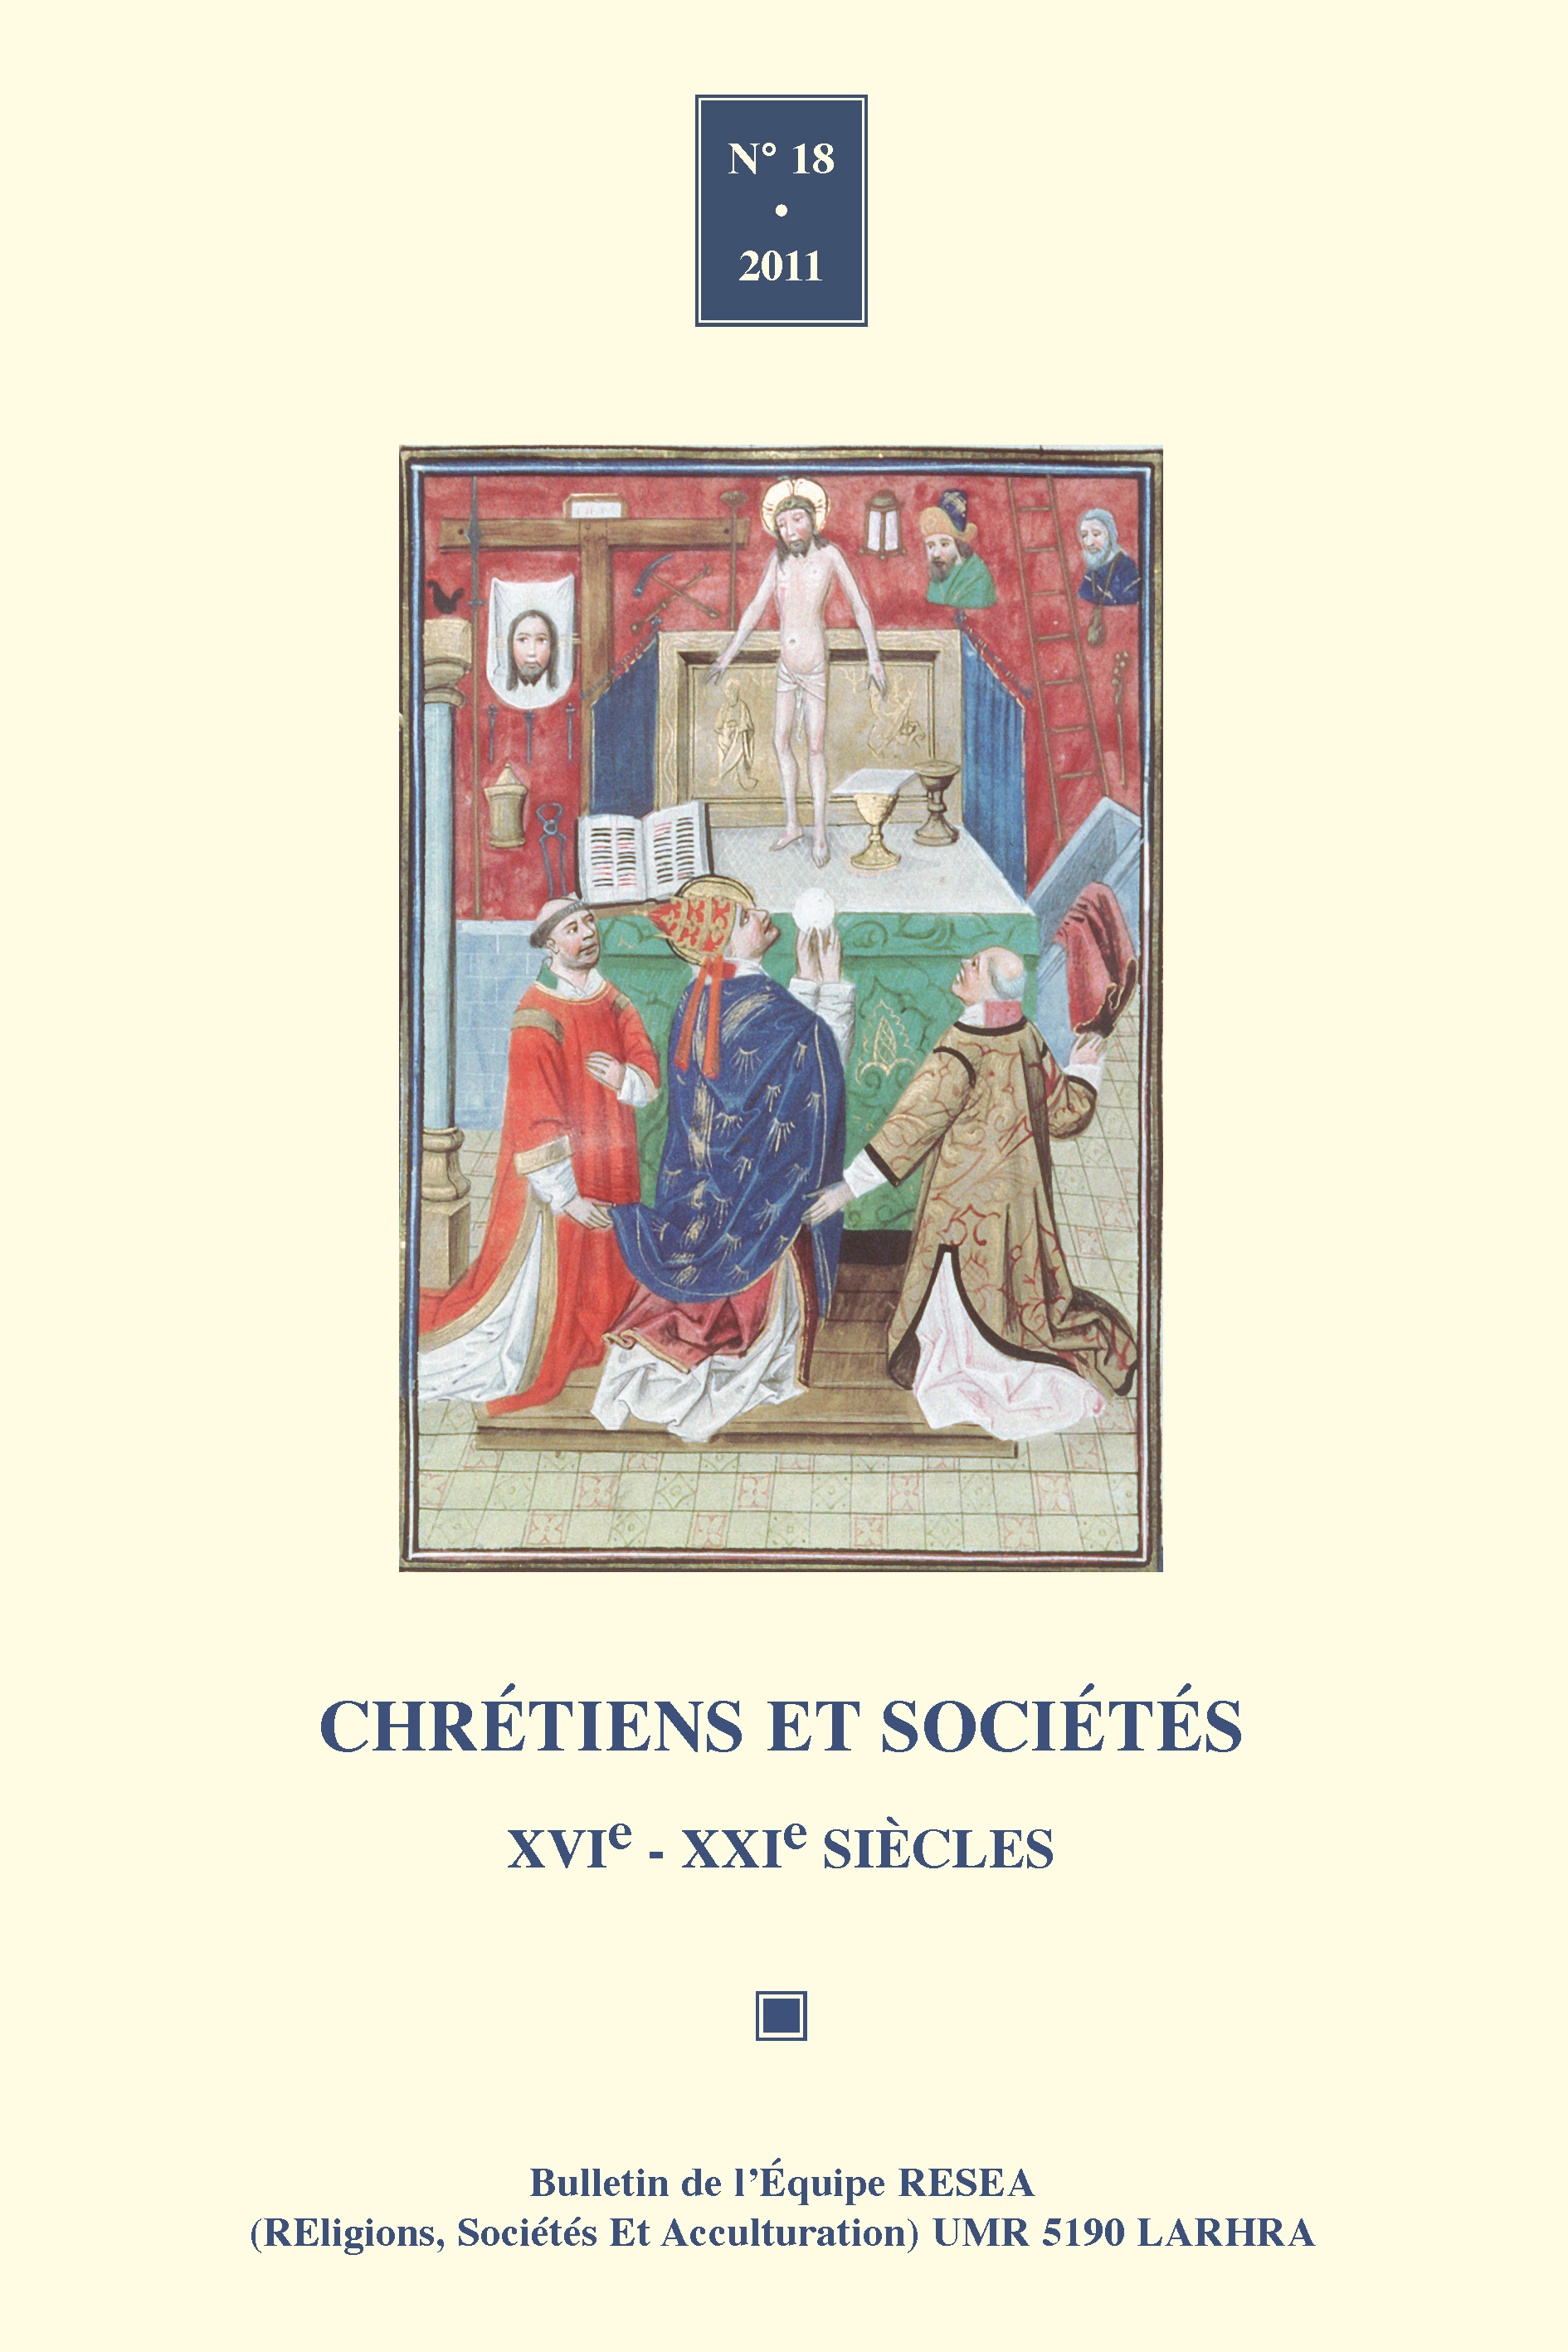 Chrétiens et sociétés n°18 (2011)